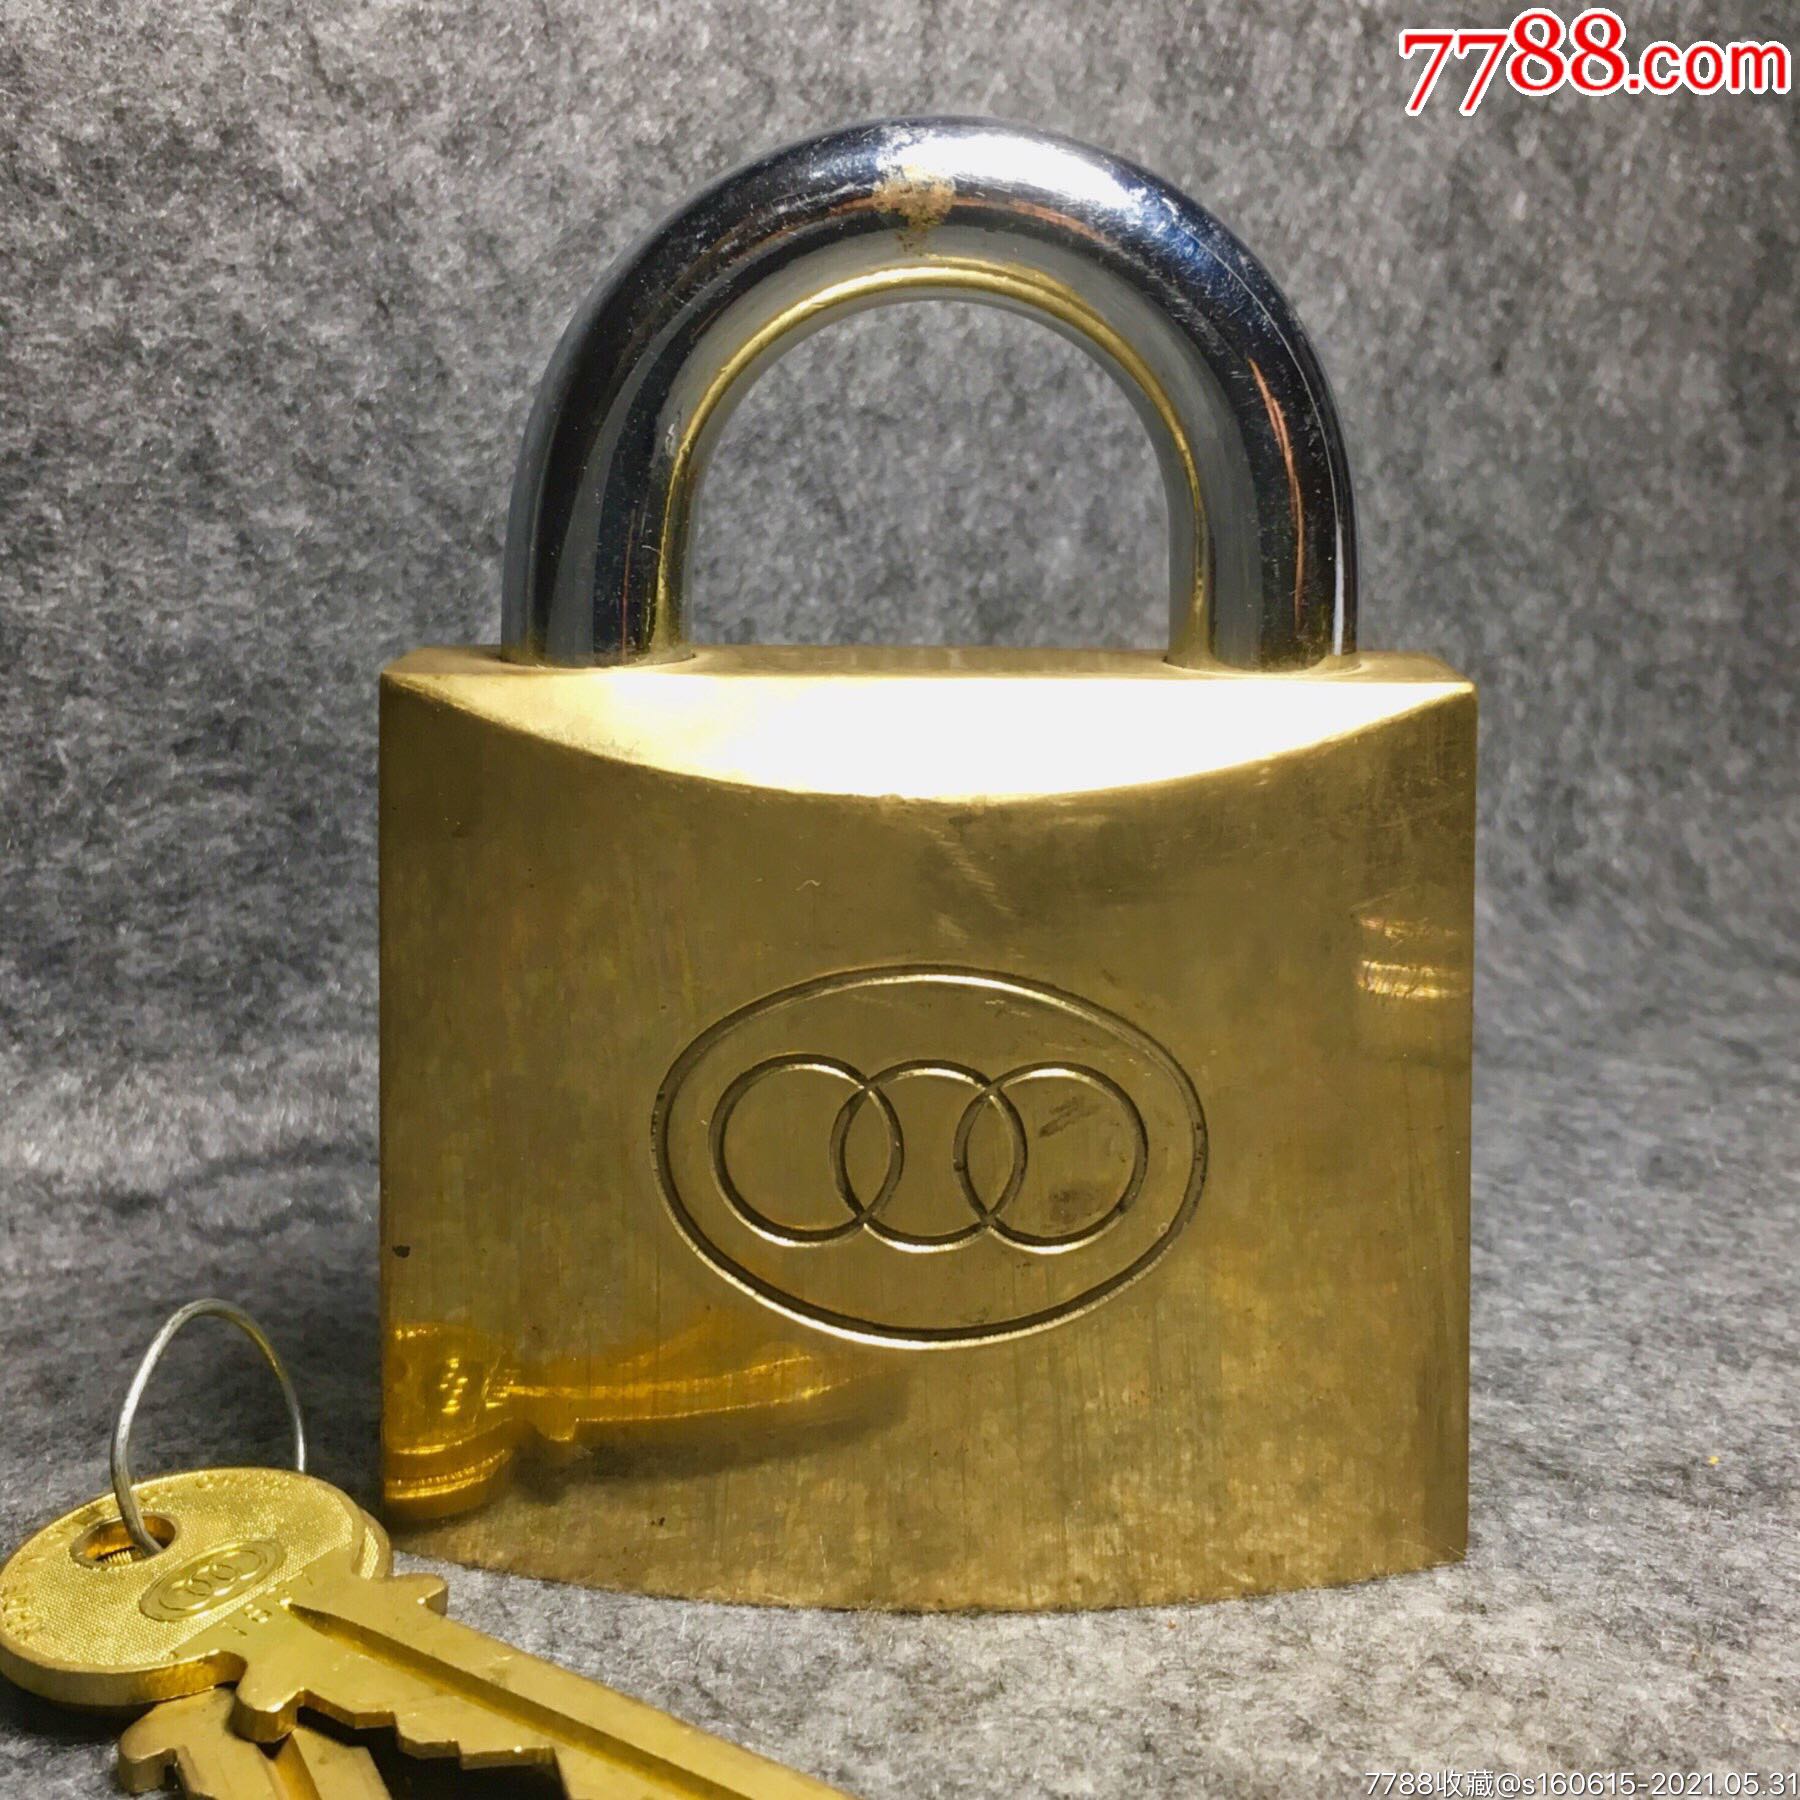 五十年代三环锁前身烟台程明锁厂超大铜锁老挂锁原配镀金钥匙